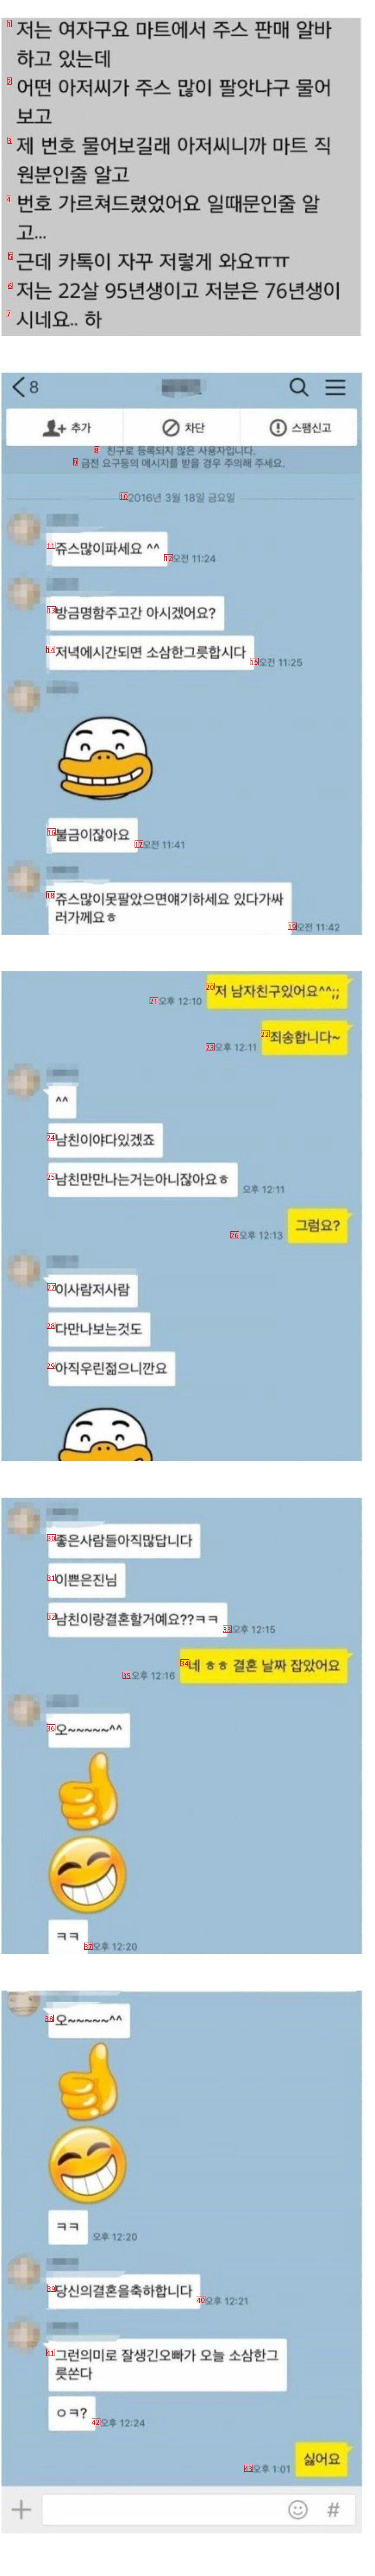 [펌] 마트 22살 쥬스 알바녀 번호 따임 레전드 ㄷ ㄷ ㄷ ㄷ .jpg